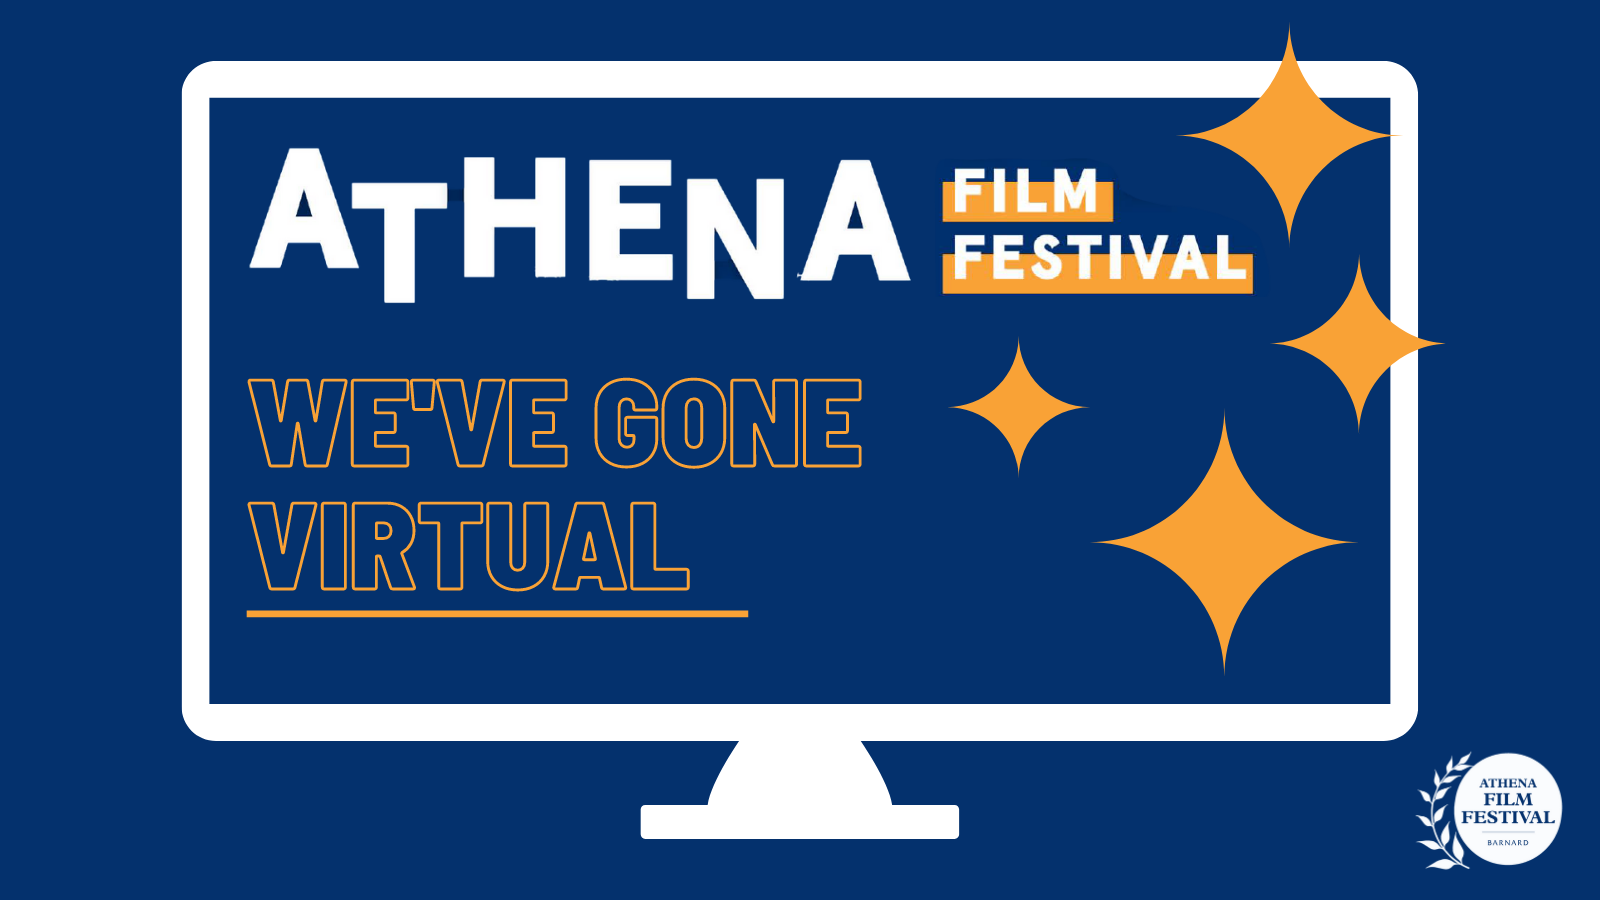 Athena Film Festival flyer, we've gone virtual!